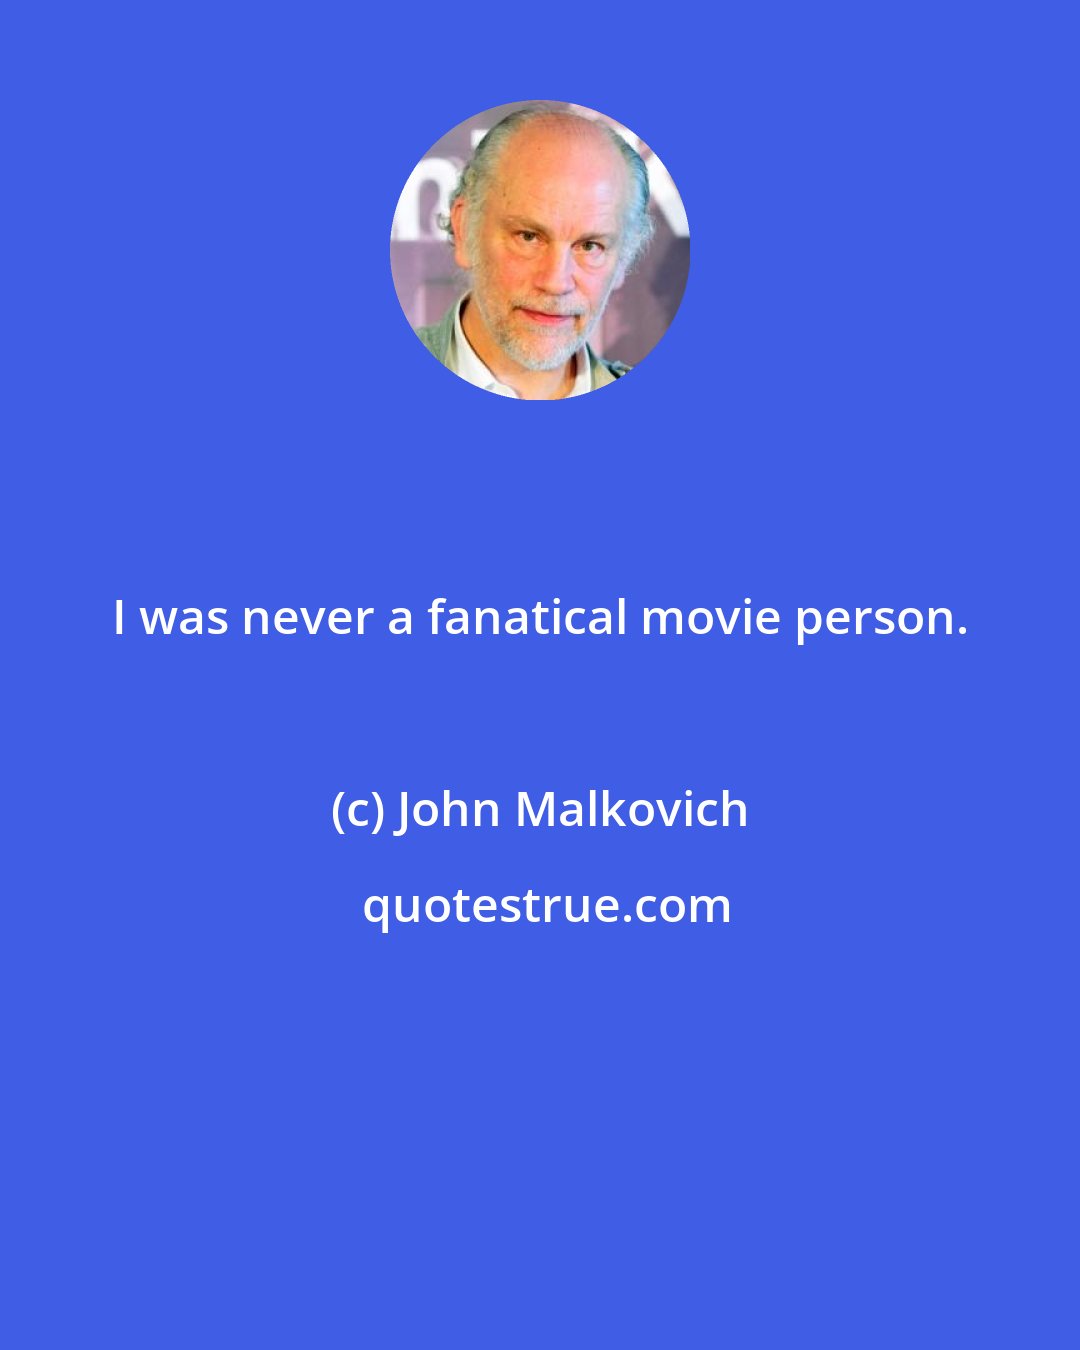 John Malkovich: I was never a fanatical movie person.